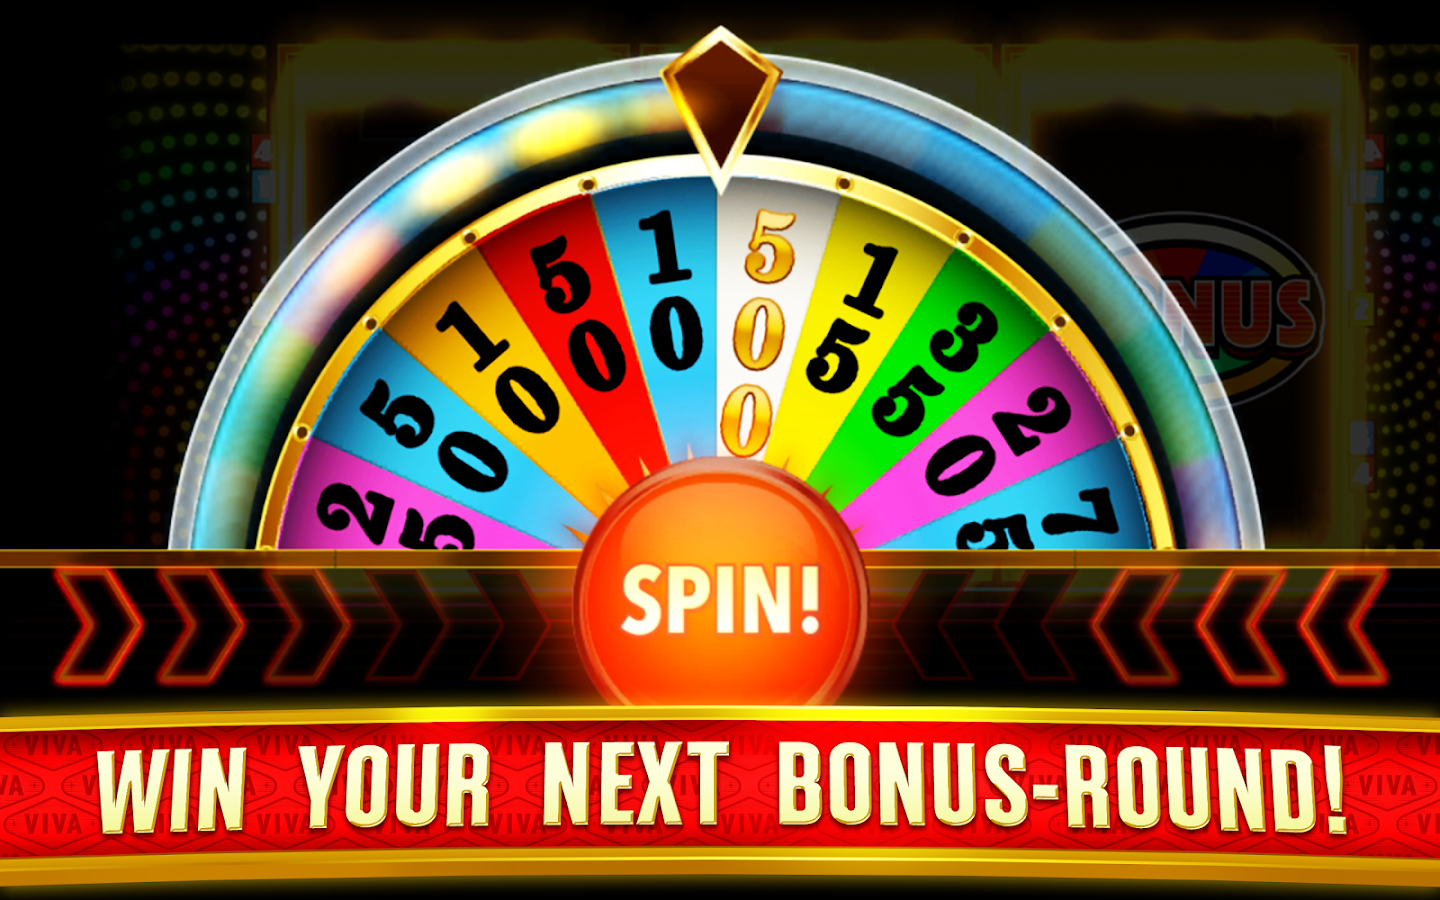 All slots casino 888 gratis 586678